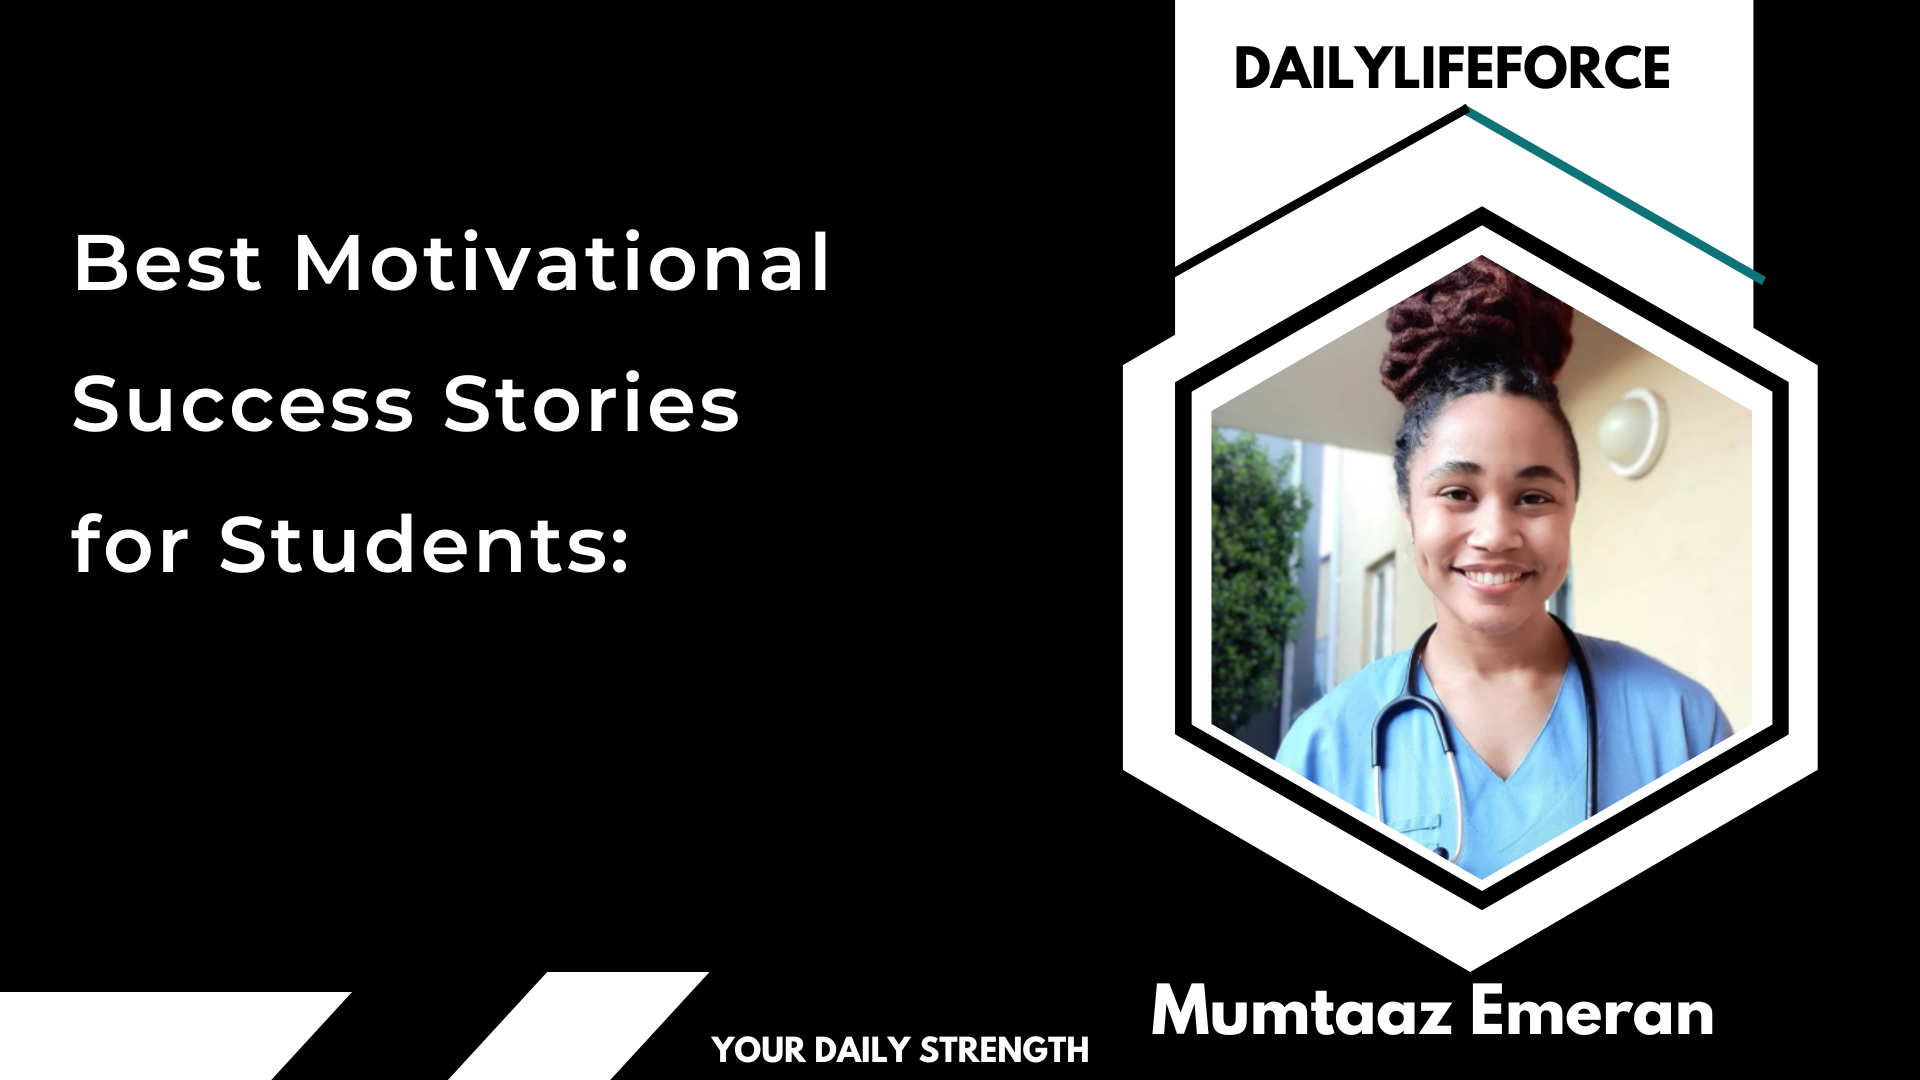 Mumtaaz Emeran is a Inspiring Medical Student